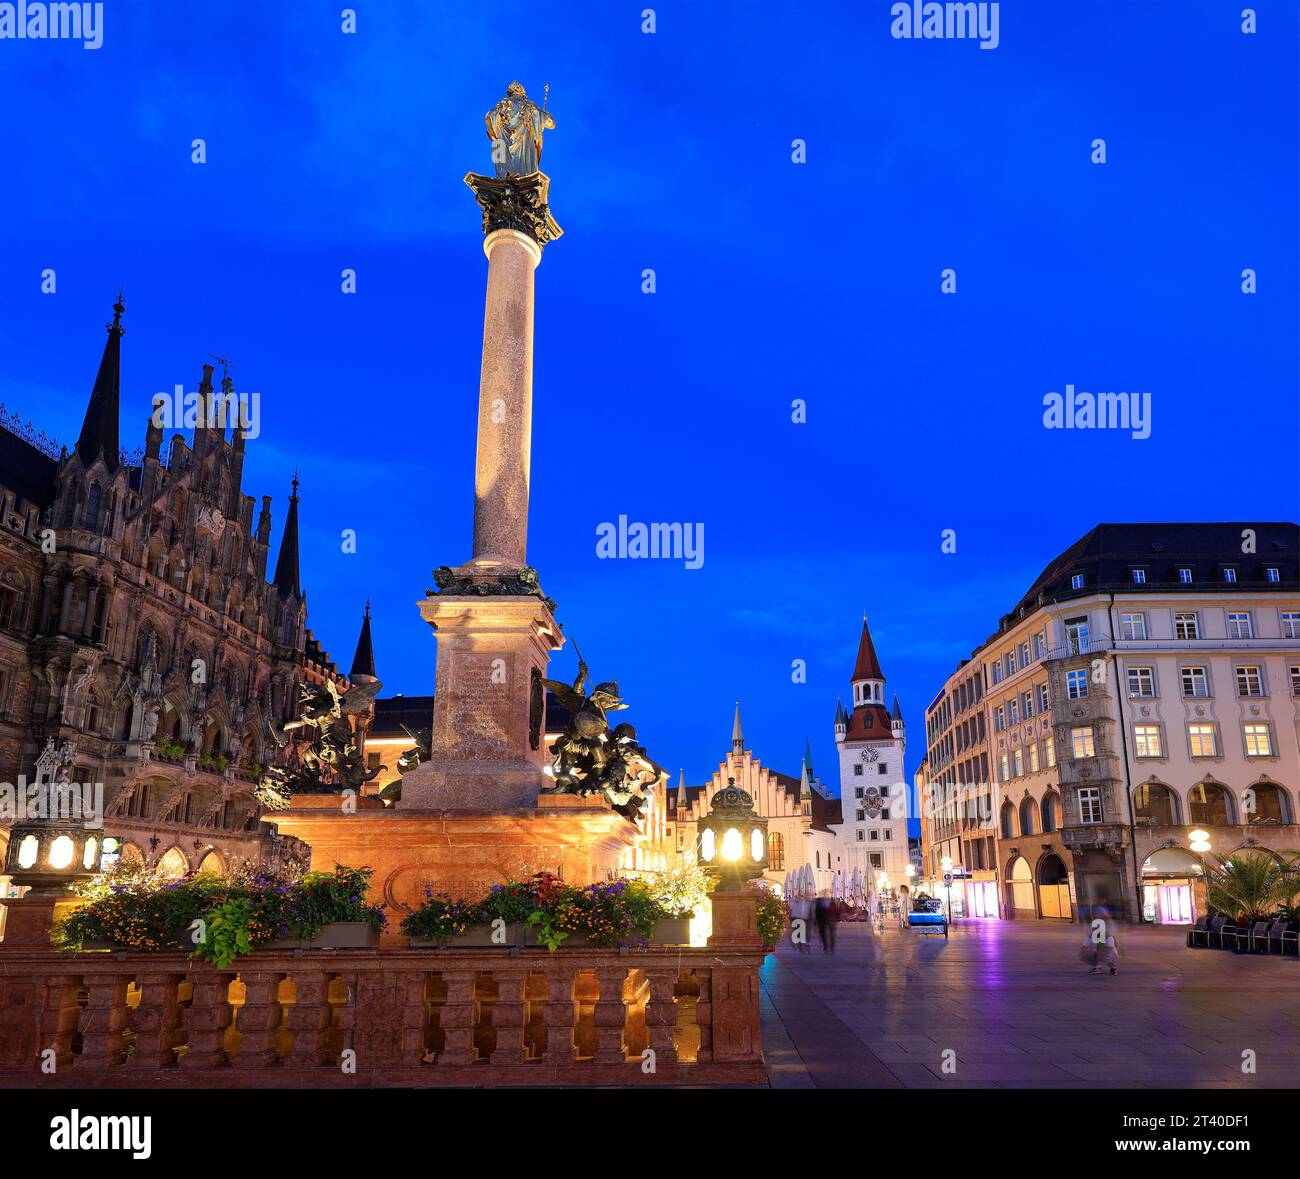 Vue sur l'hôtel de ville principal avec tour de l'horloge sur la place Marie illuminée au crépuscule avec l'ancien hôtel de ville sur le fond à Munich, Allemagne Banque D'Images